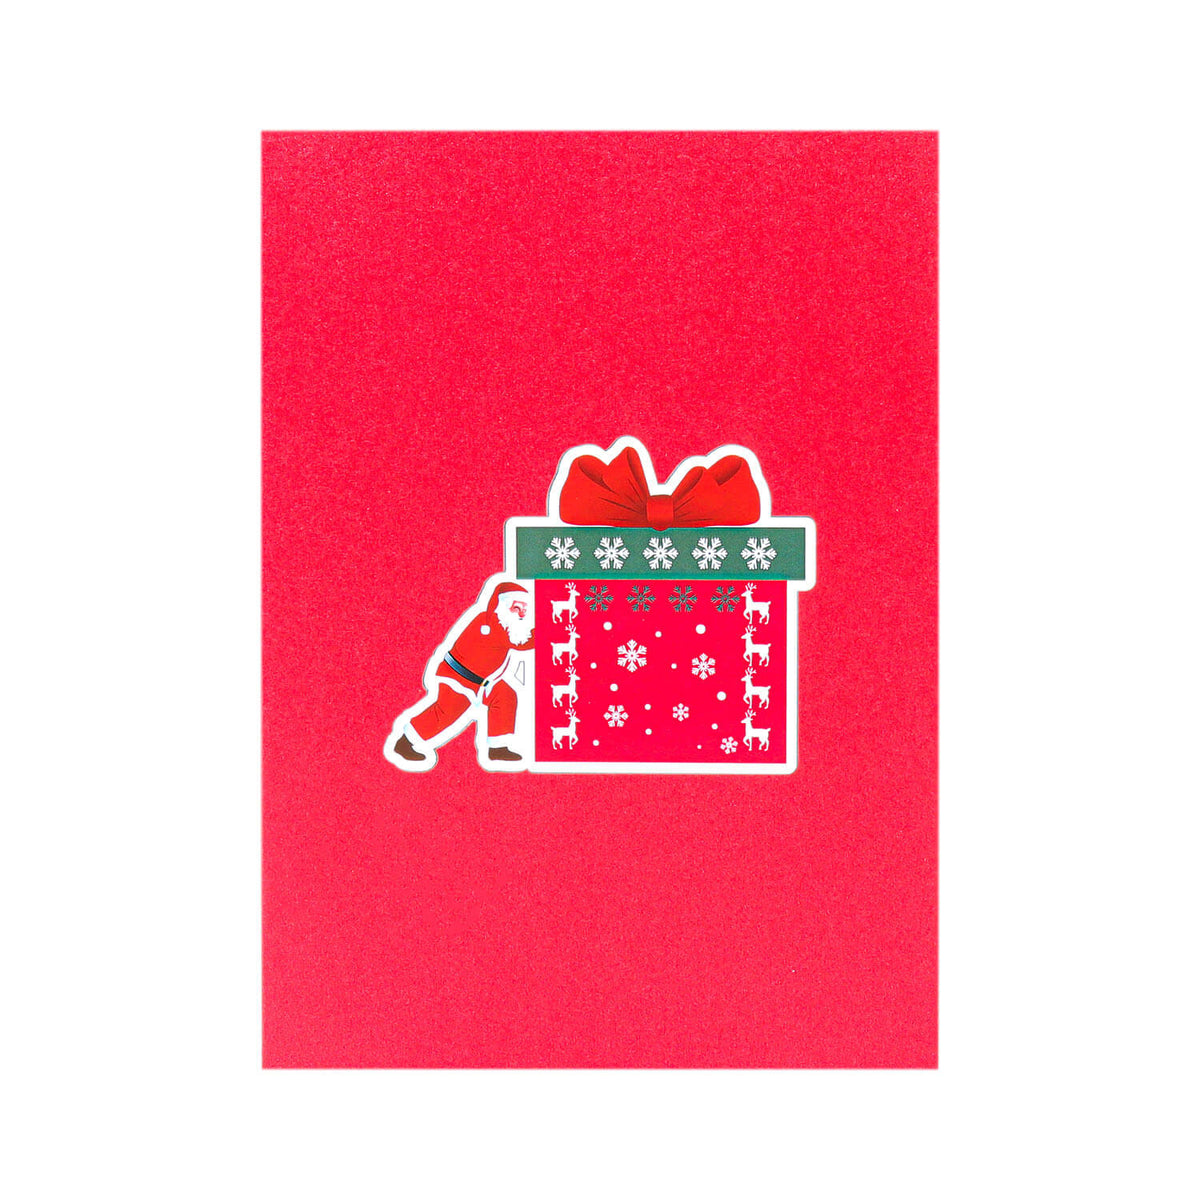 Santa with Gift Box Pop-Up Card